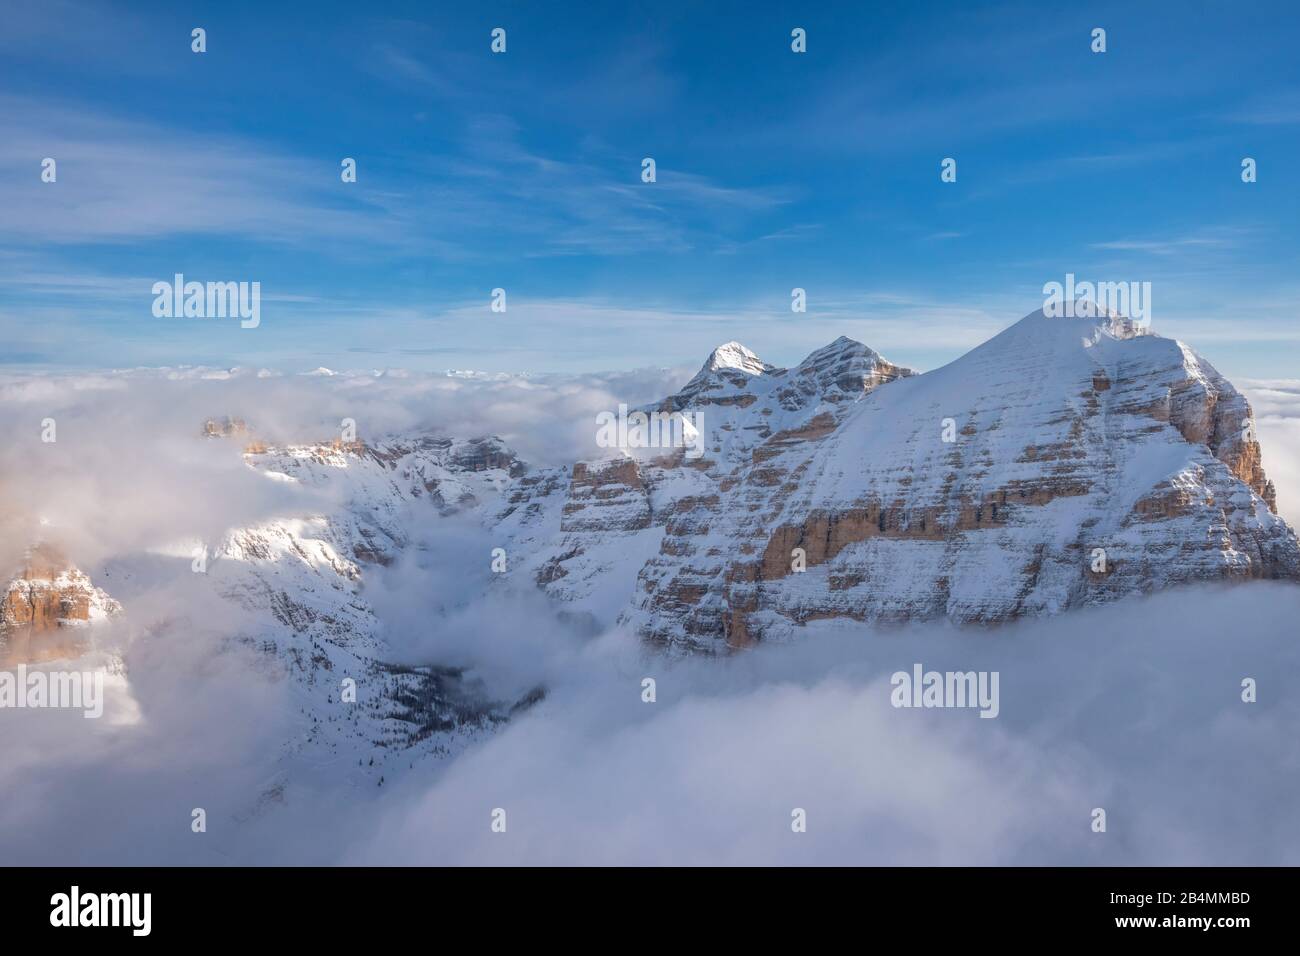 Cortina d'Ampezzo, Provinz Belluno, Venetien, Italien, Europa. Luftbildaufnahme der drei Tofana-Gipfel mit dem Travenanzestal Stock Photo